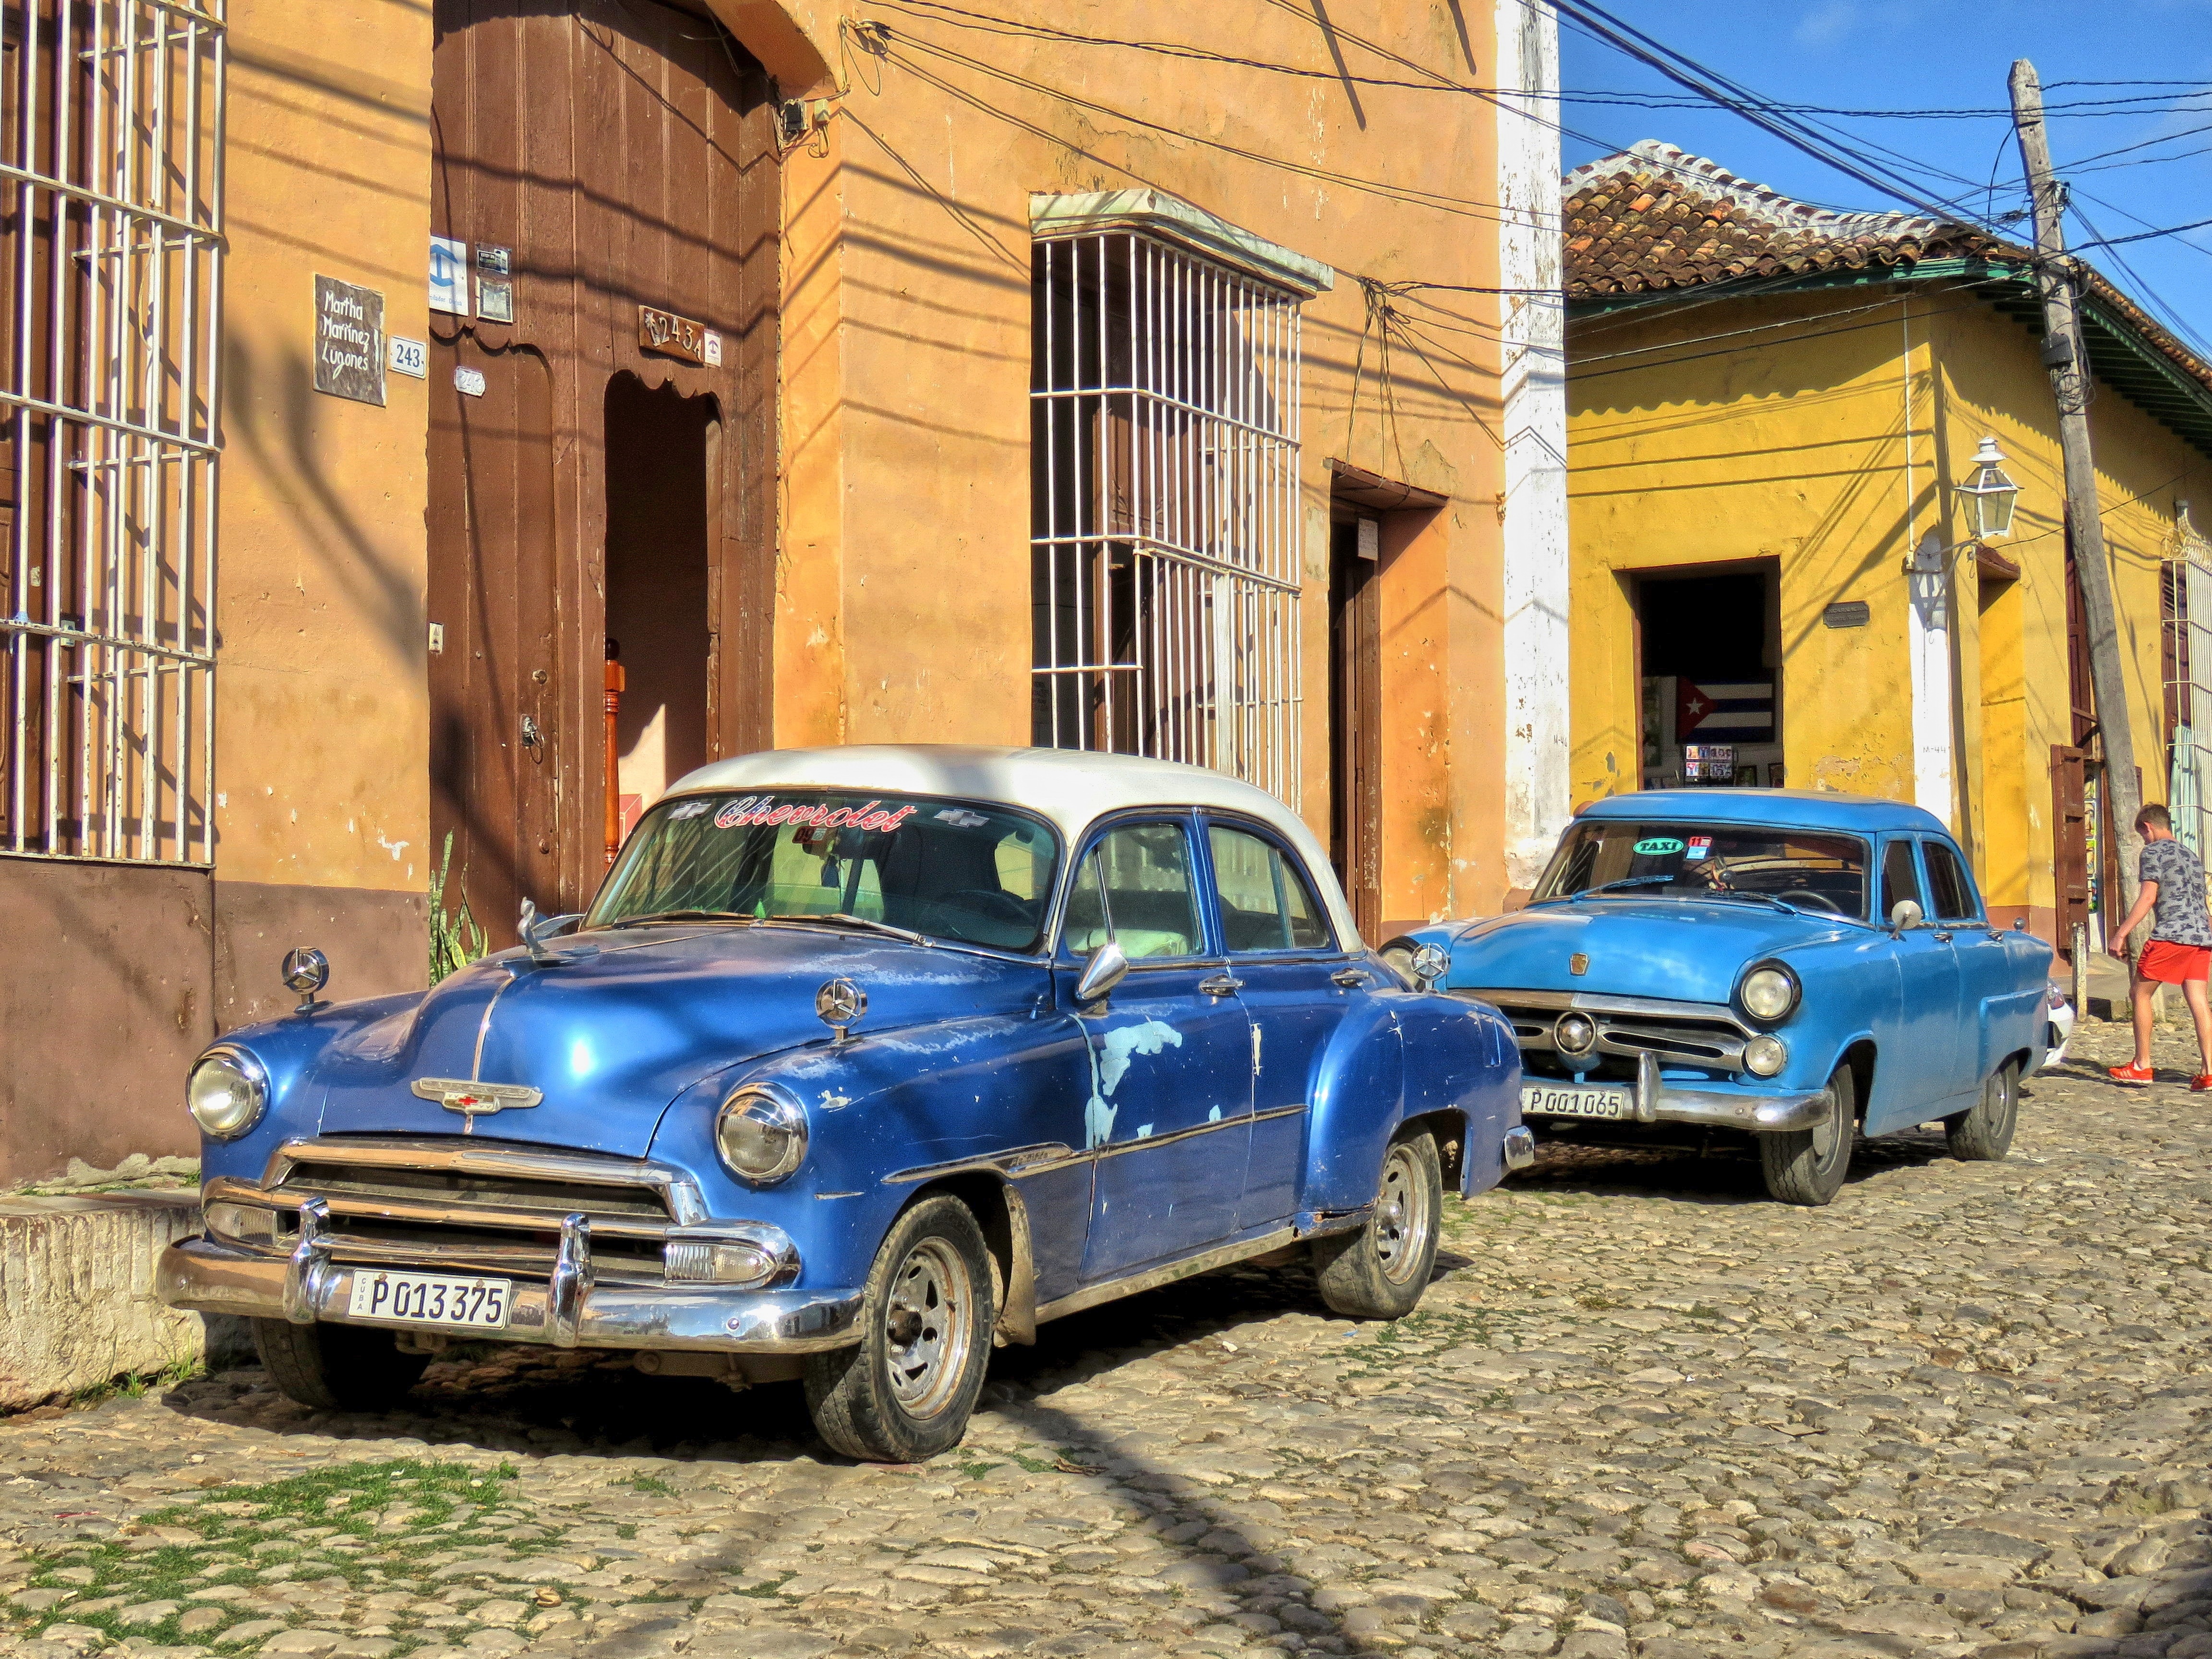 blue vintage car